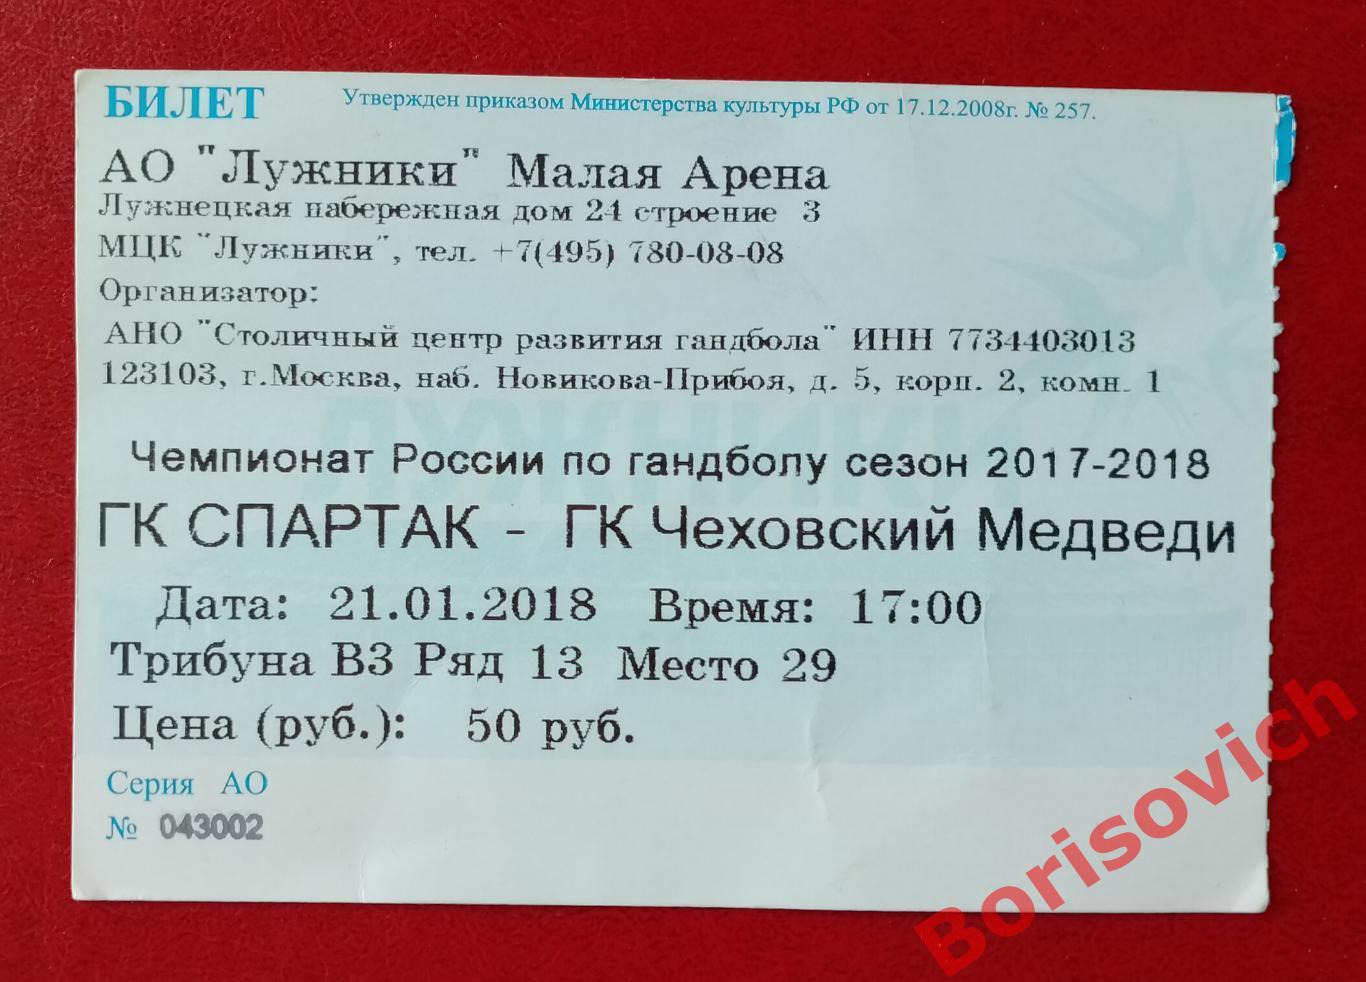 Билет ГК Спартак Москва - ГК Чеховские Медведи Чехов 21-01-2018